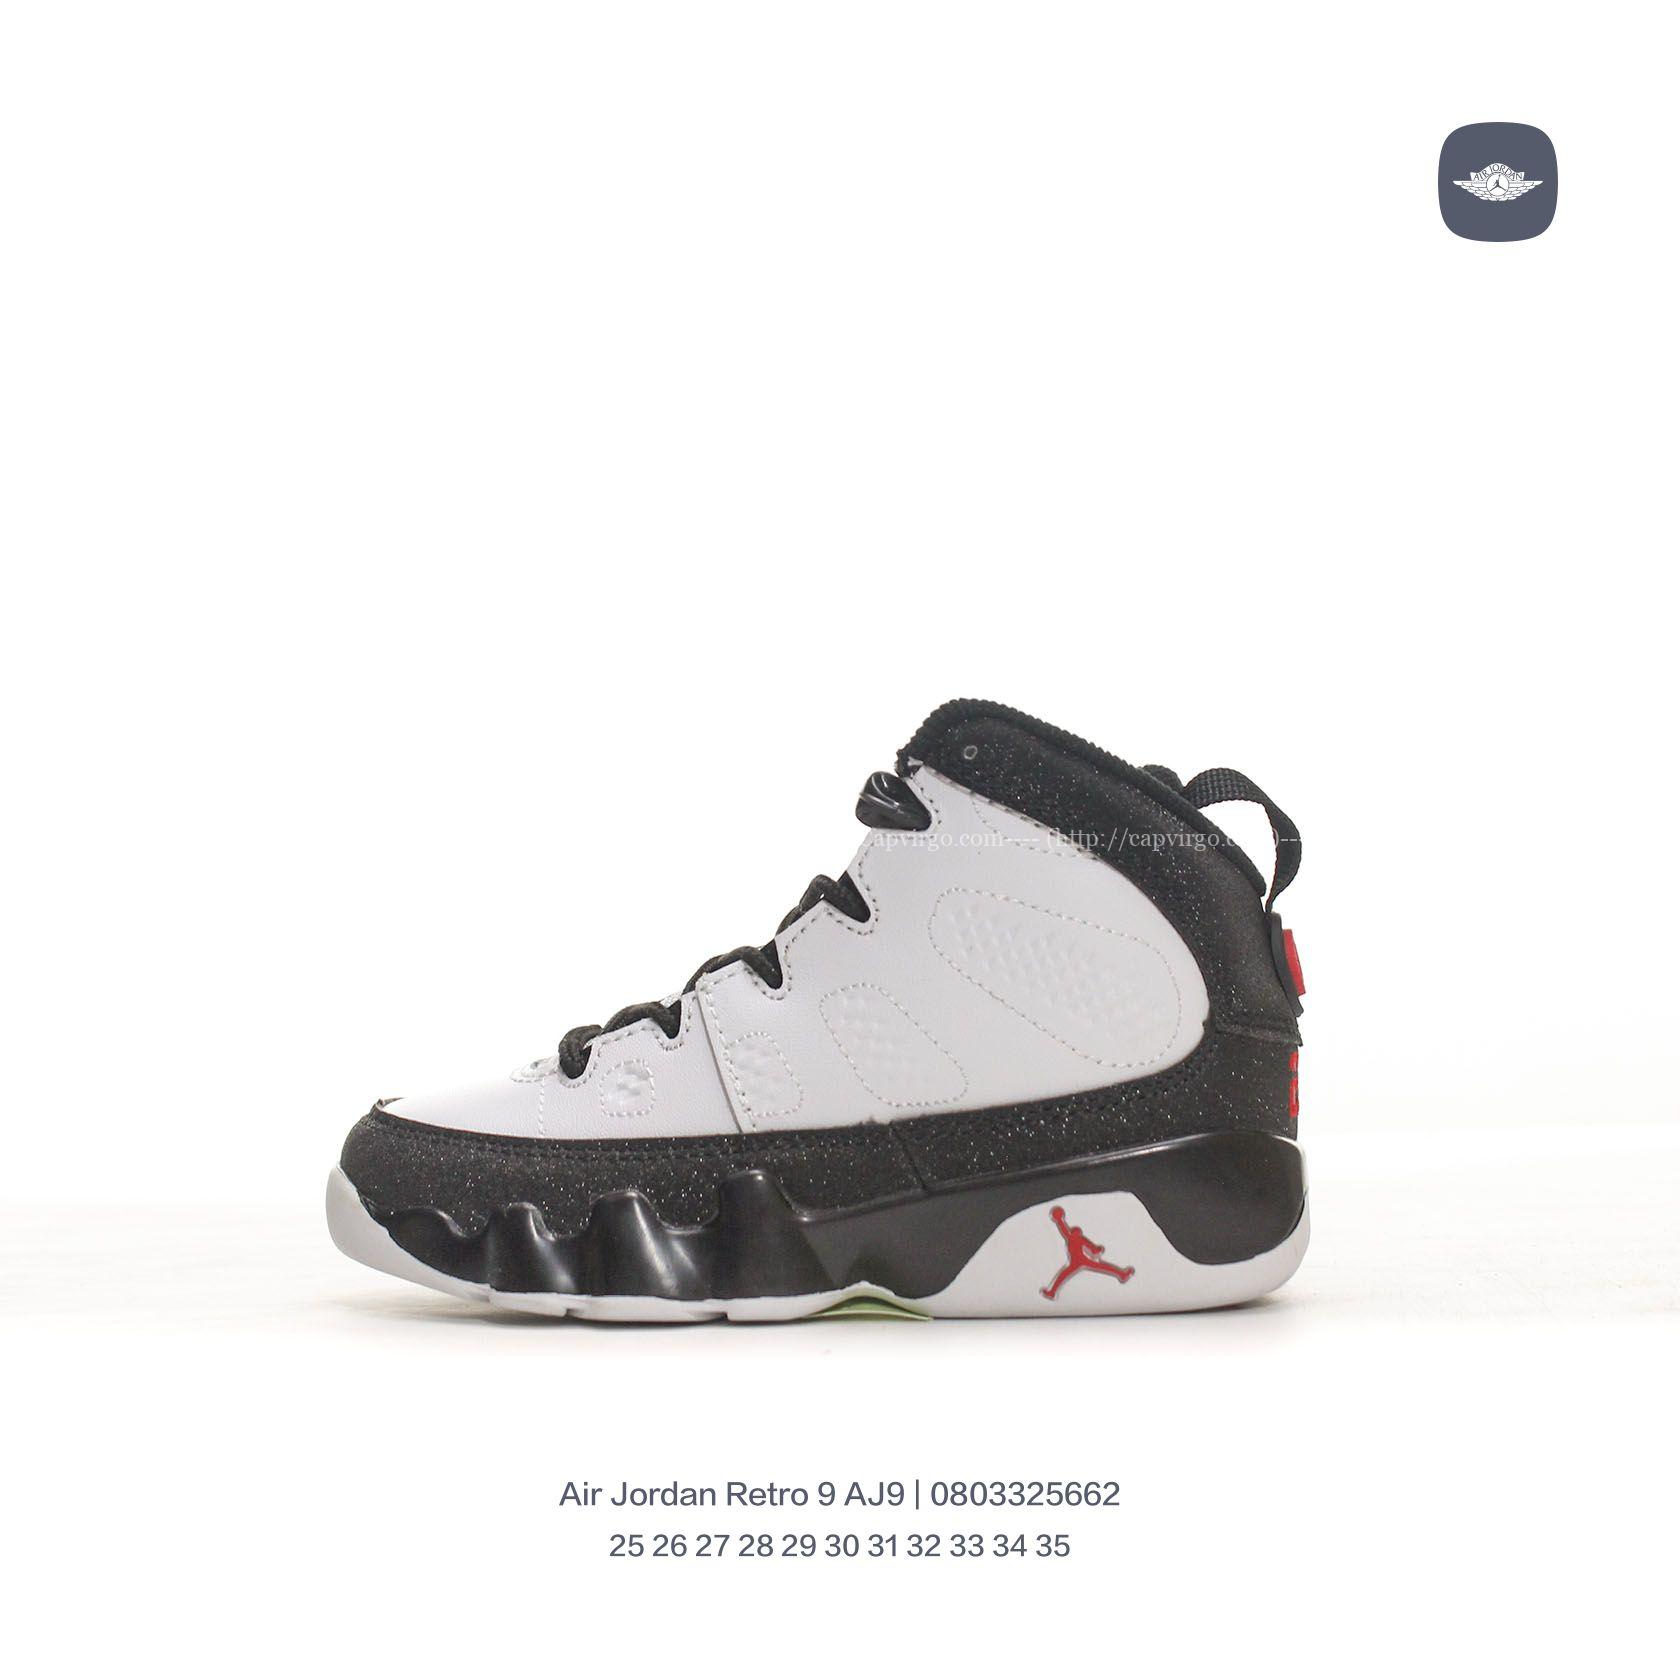 Giày Air Jordan Retro 9 AJ9 trẻ em màu đen ánh nhũ